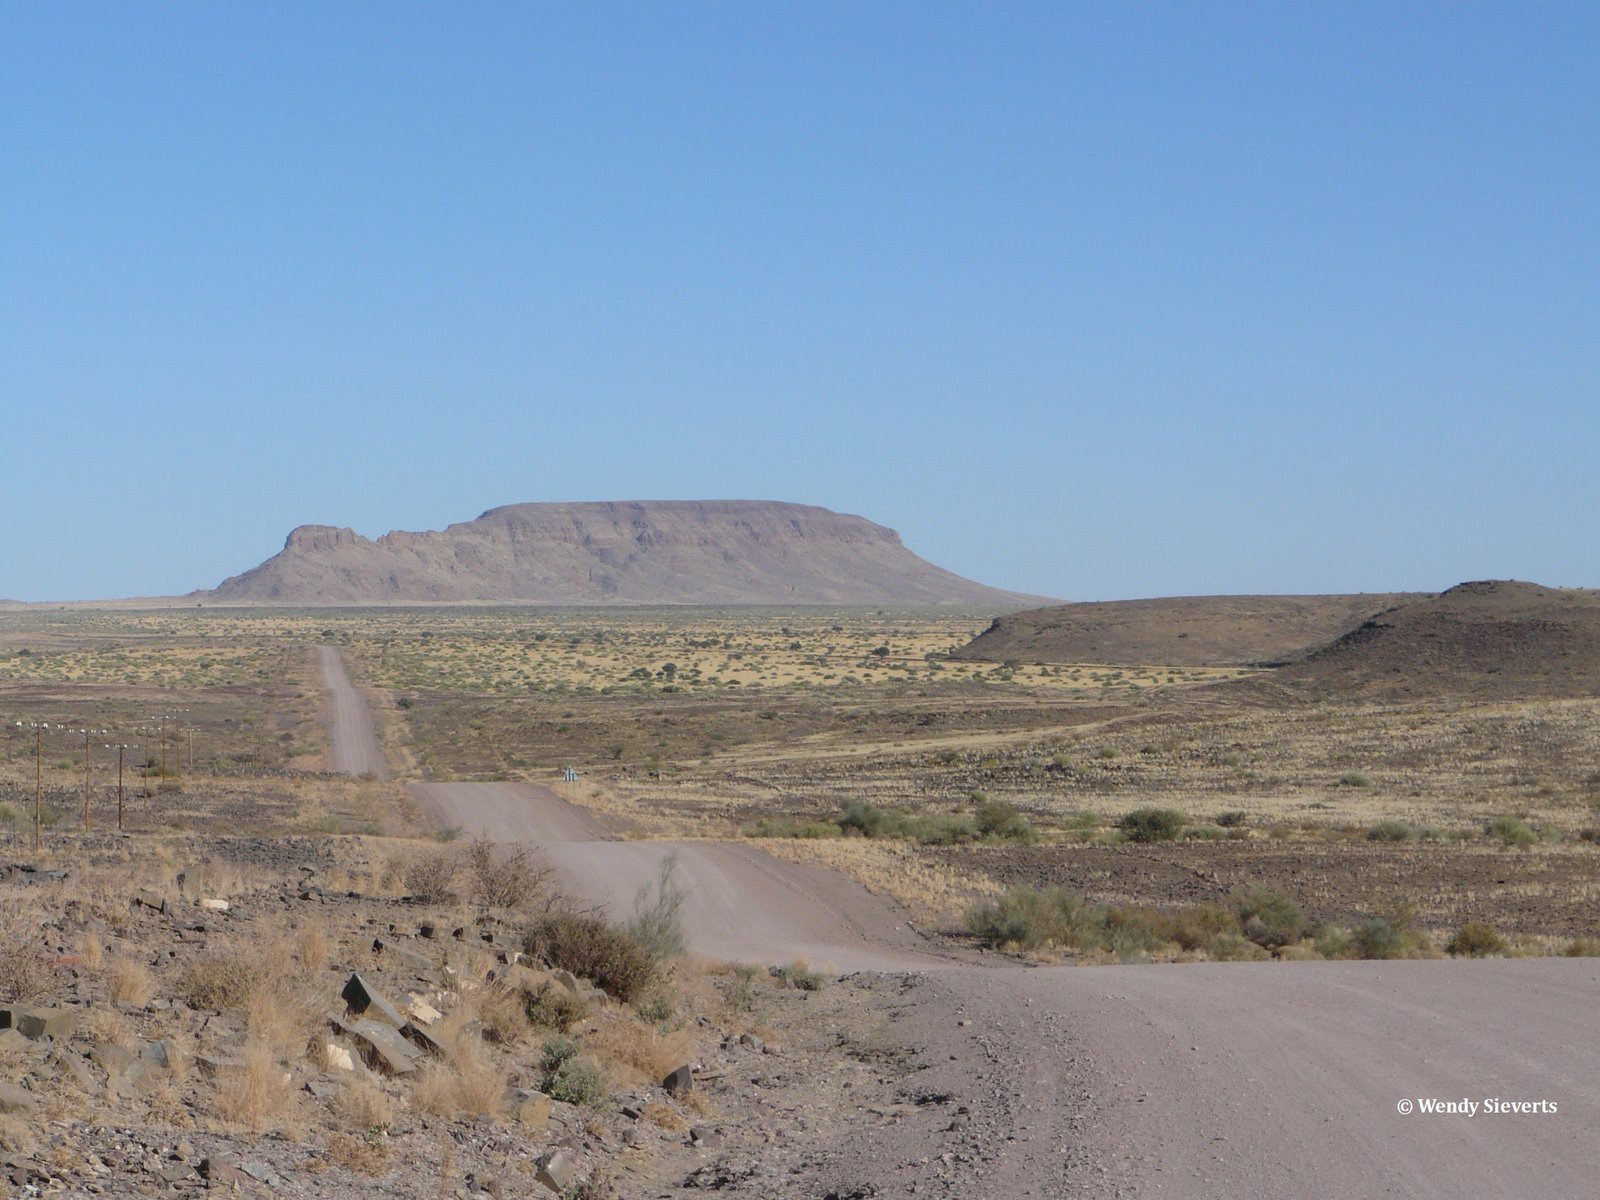 Weg door het droge en ruige landschap van Namibië